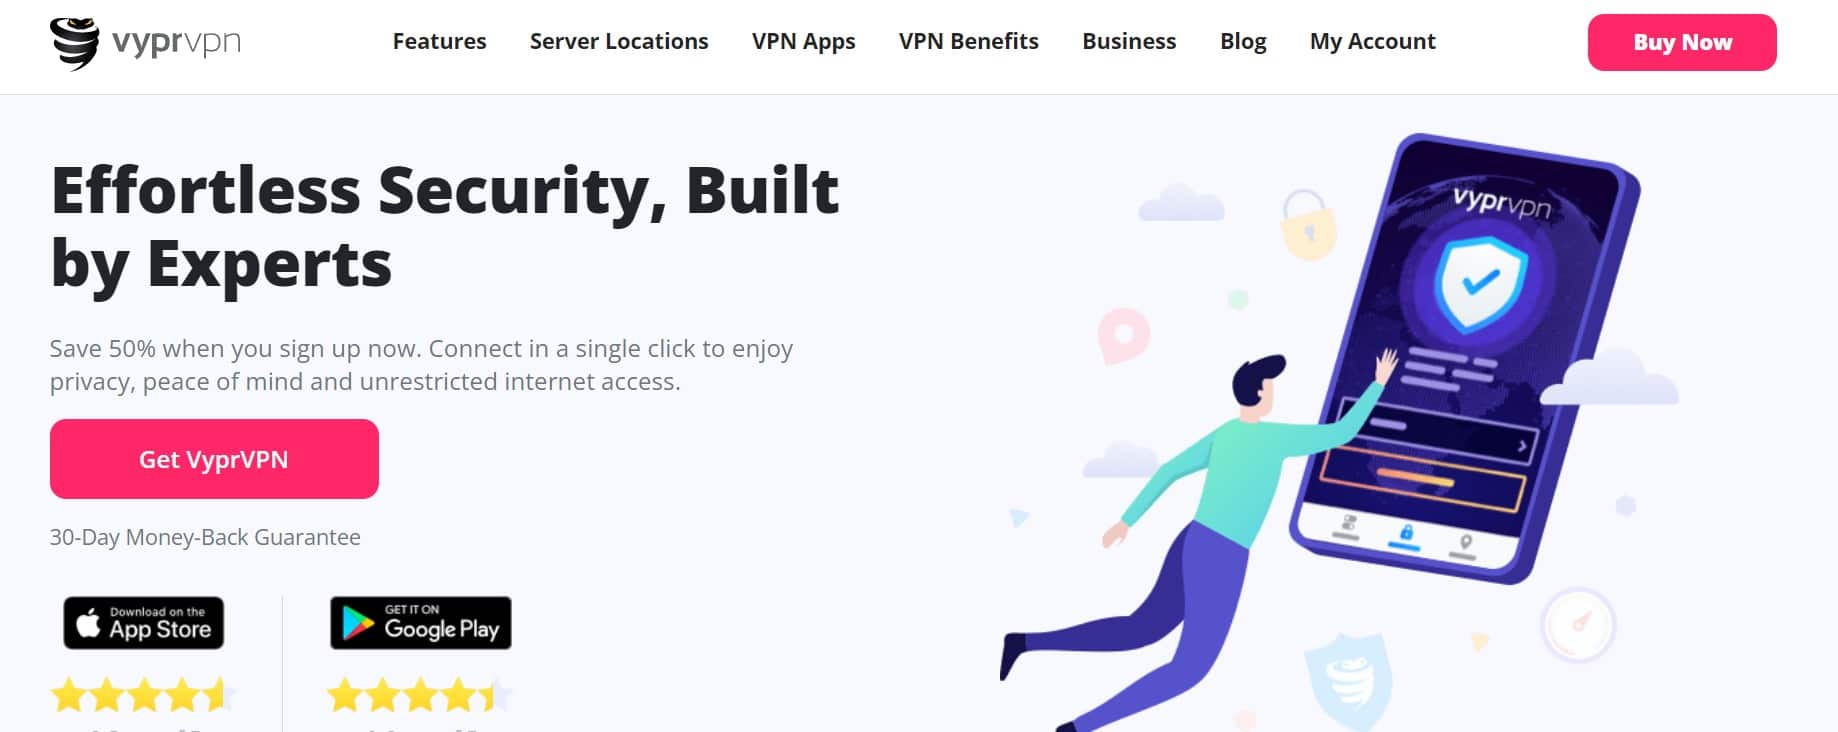 VYPR VPN Homepage